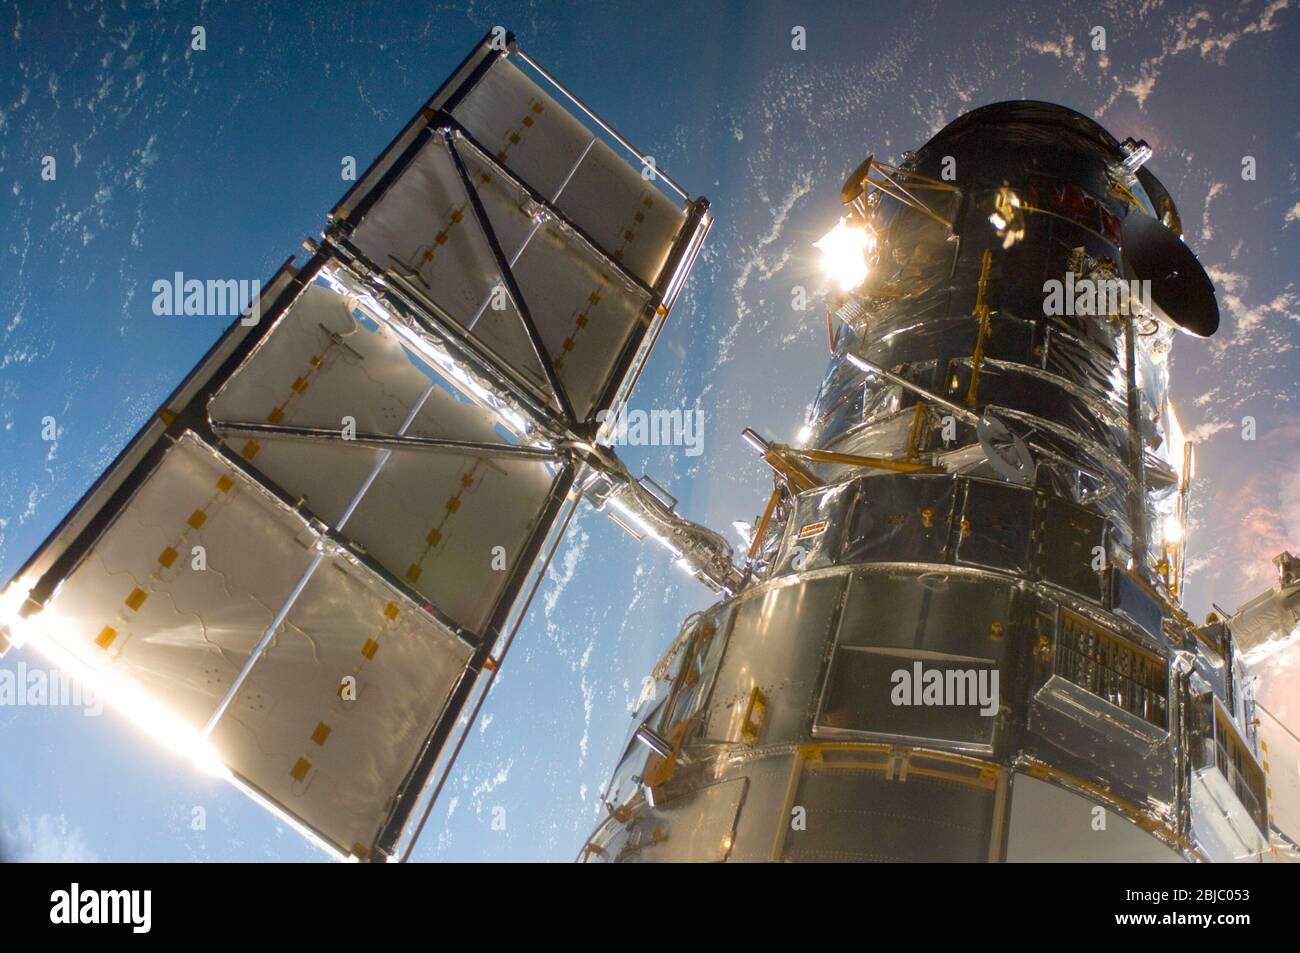 TERRE - 13 mai 2009 - le télescope spatial Hubble dans une photo accroché par un membre de la mission d'entretien 4 juste après la navette spatiale Atlantis captur Banque D'Images